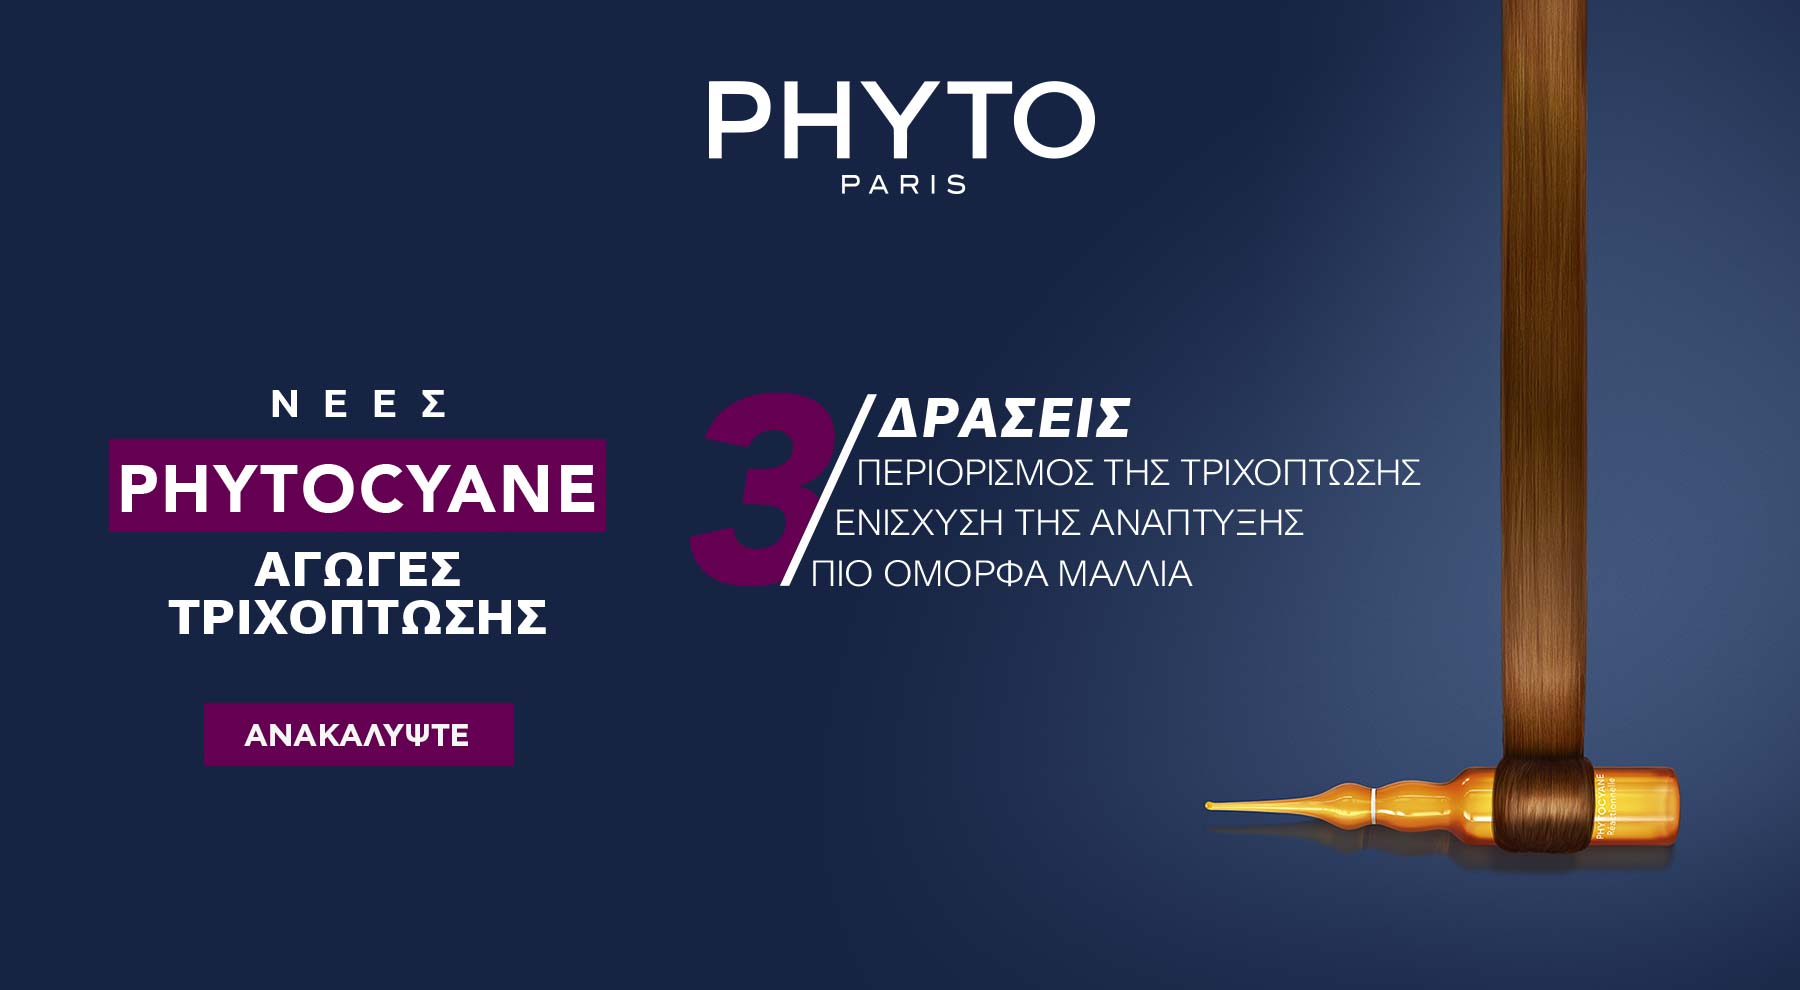 PhytoCyane